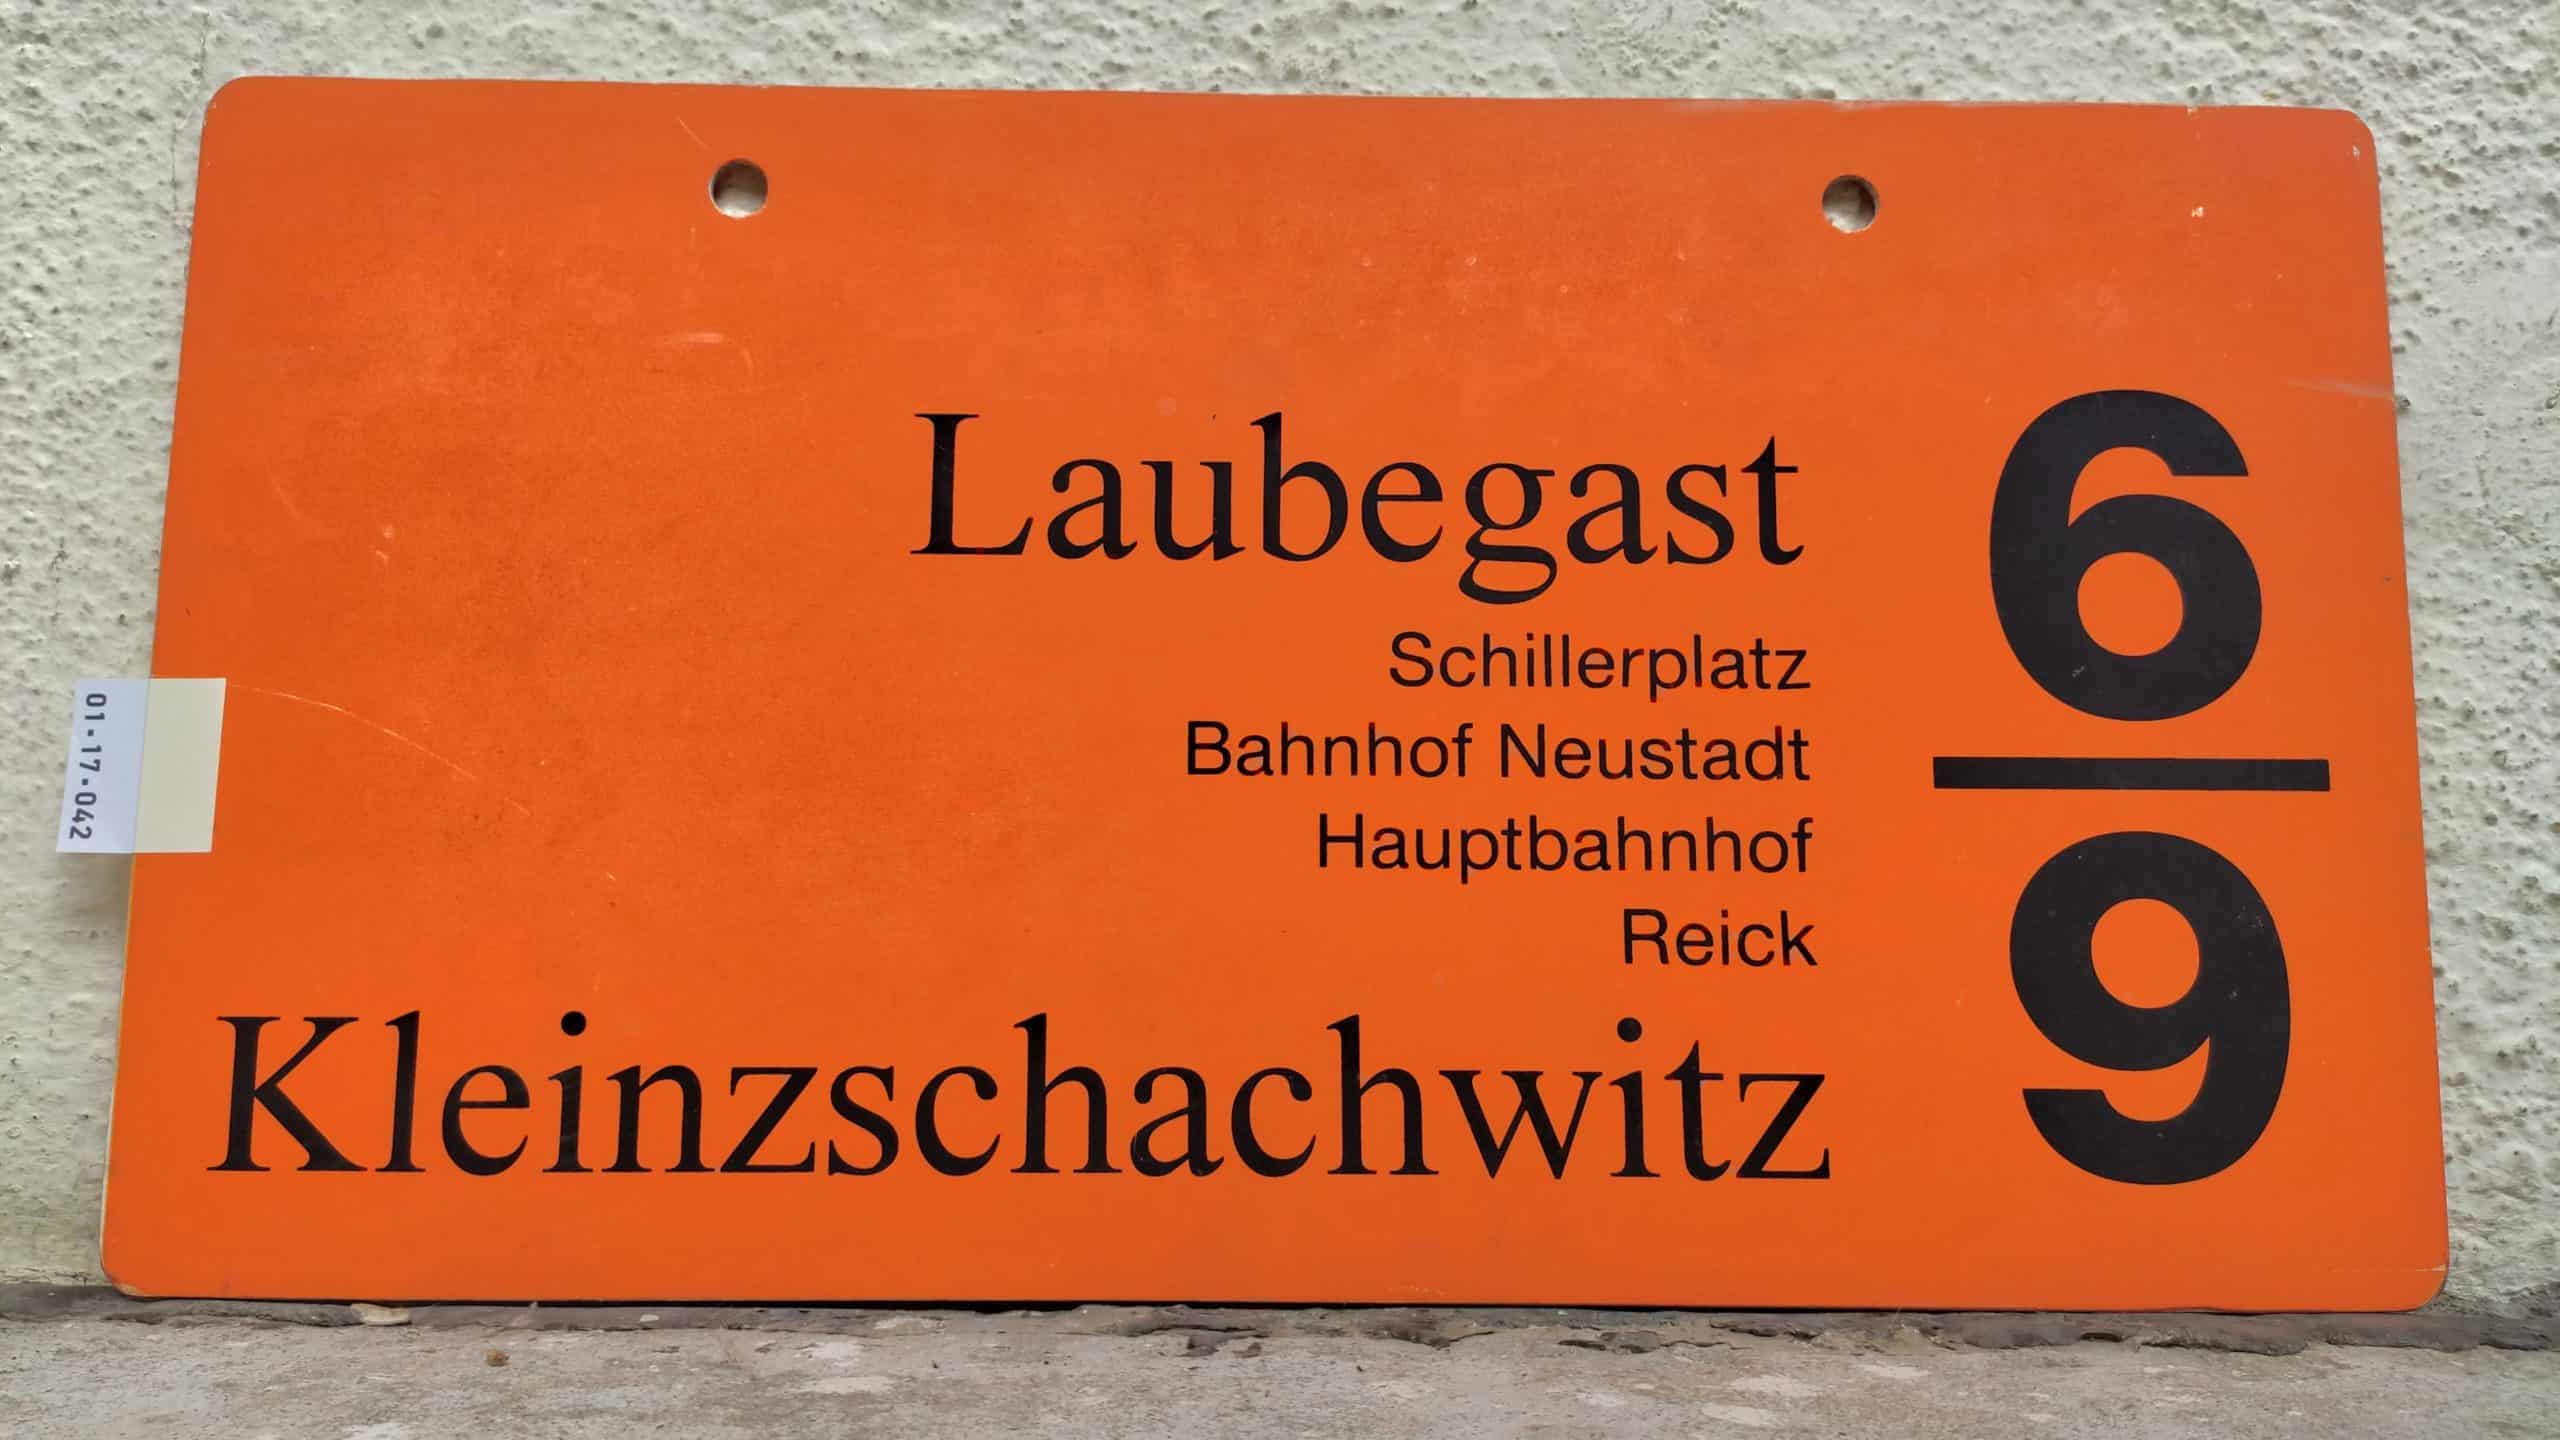 6/9 Laubegast – Kleinzschachwitz #1